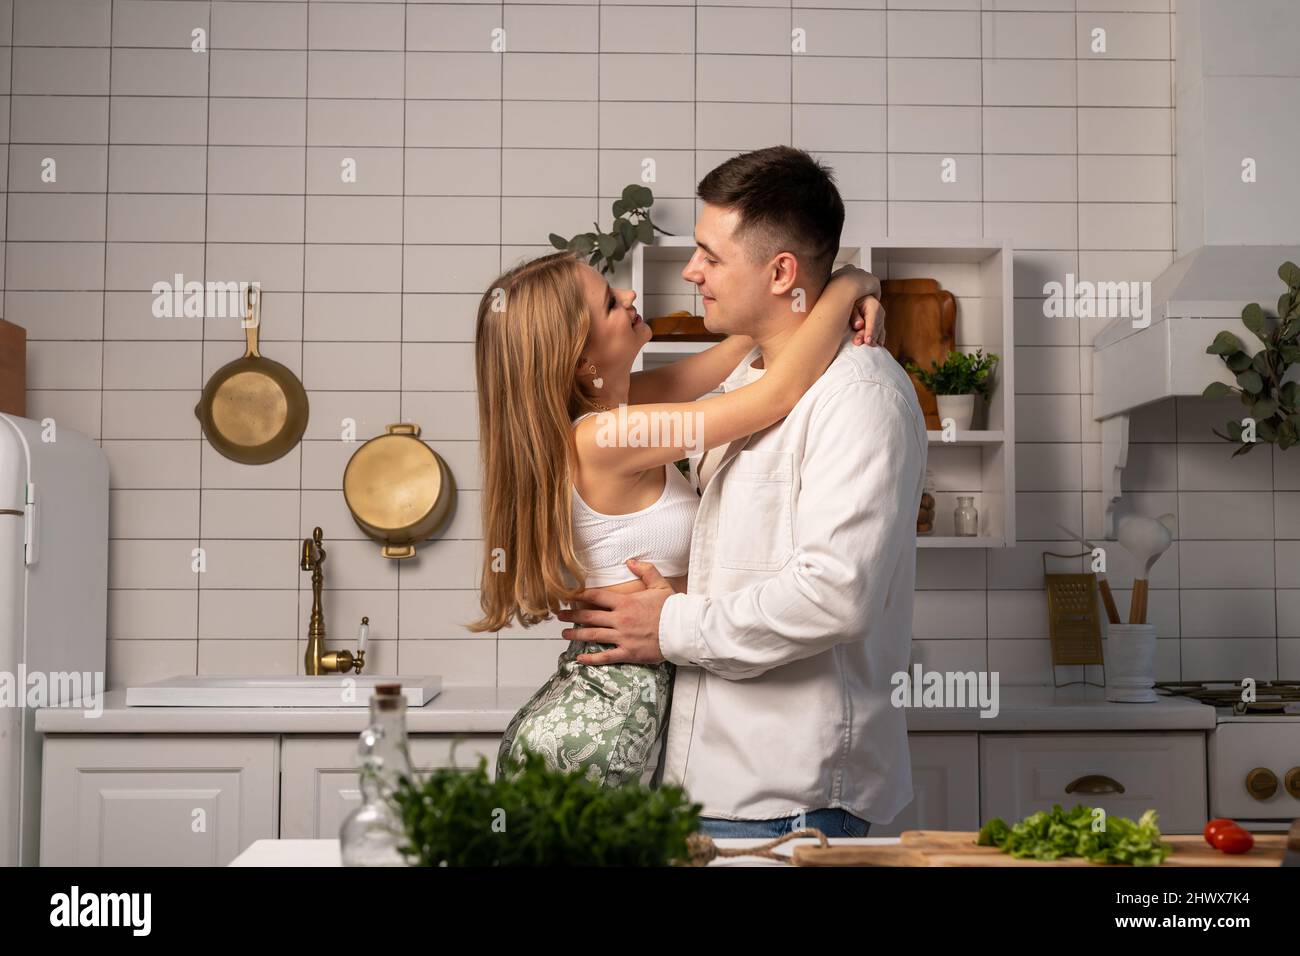 Felice giovane coppia abbraccia mentre cucinava a casa. Bell'uomo e bella donna sorridente. Relazione romantica e tenera. Foto di alta qualità Foto Stock